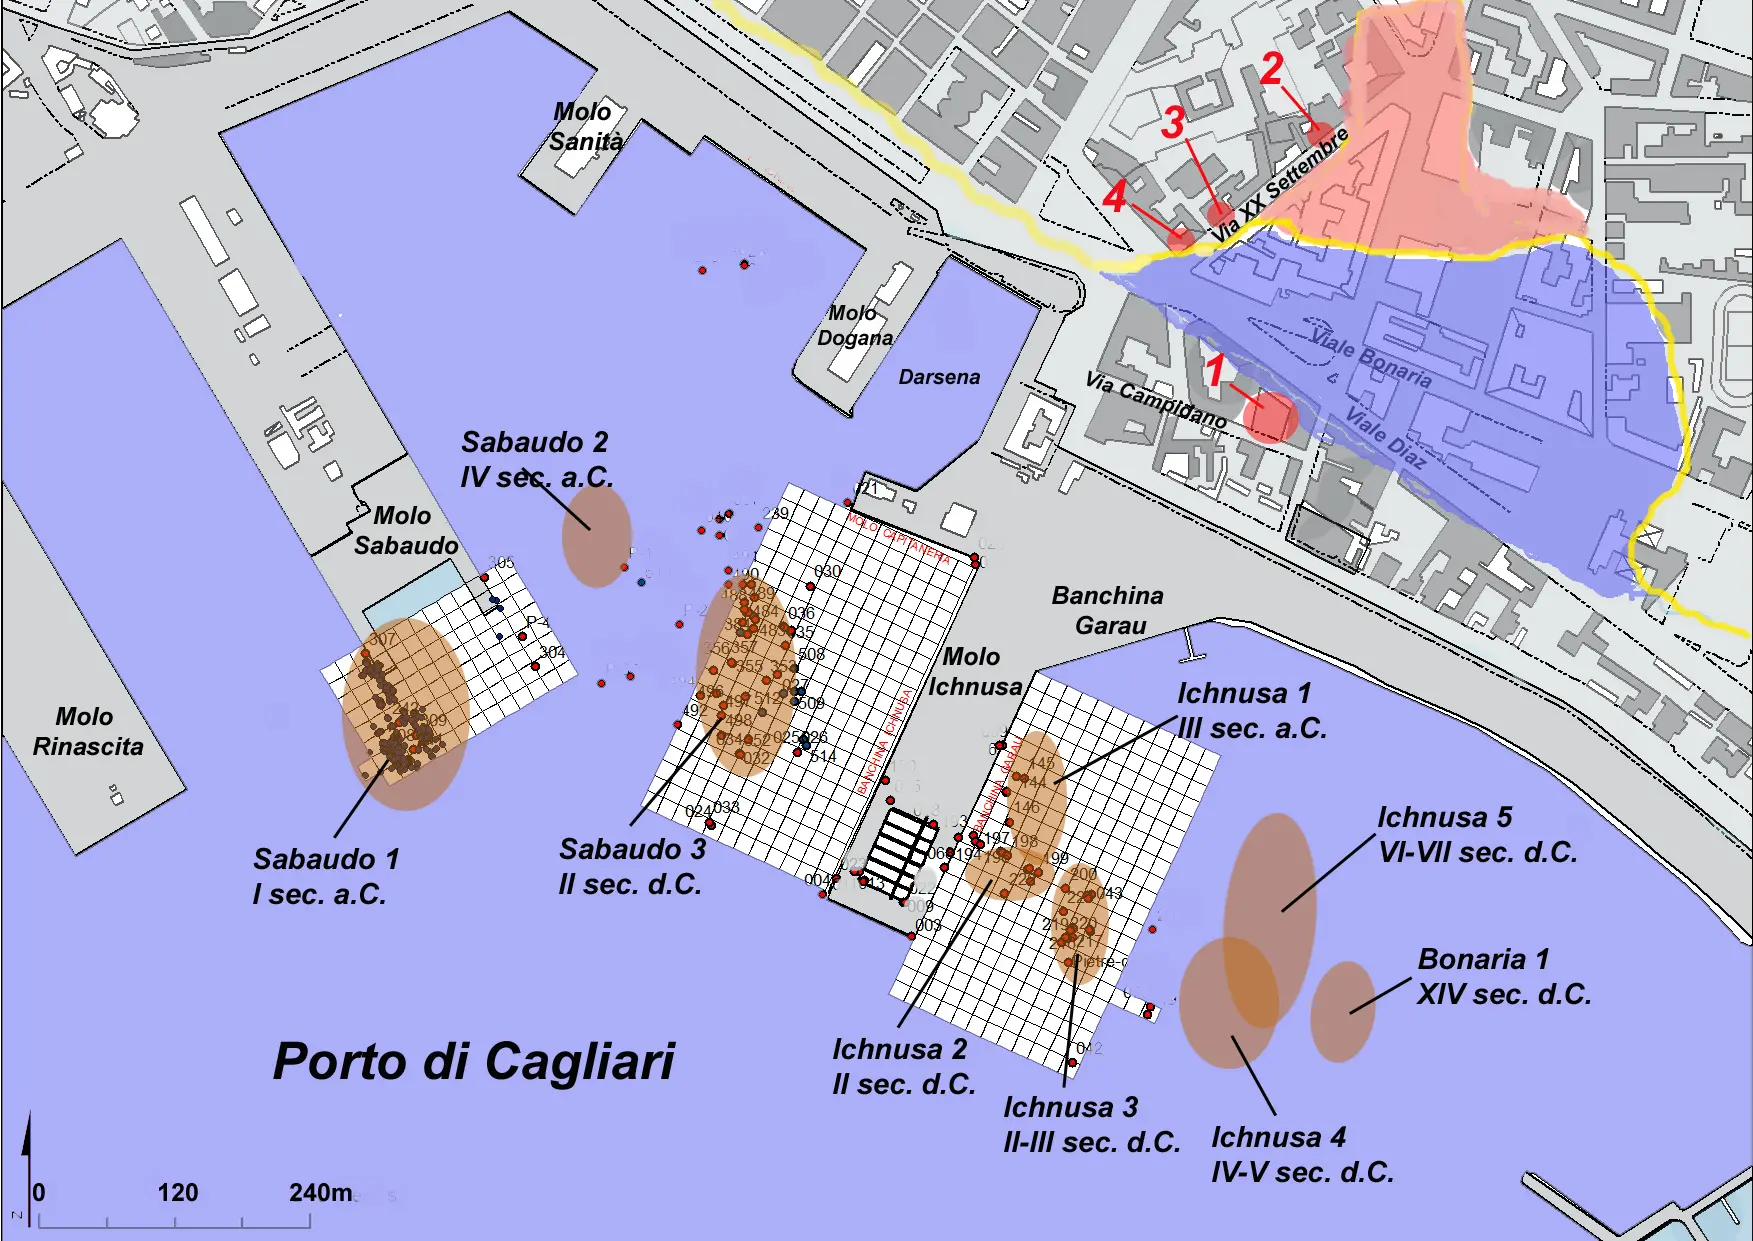 La mappa dei tesori archeologici nel porto di Cagliari (immagine concessa)